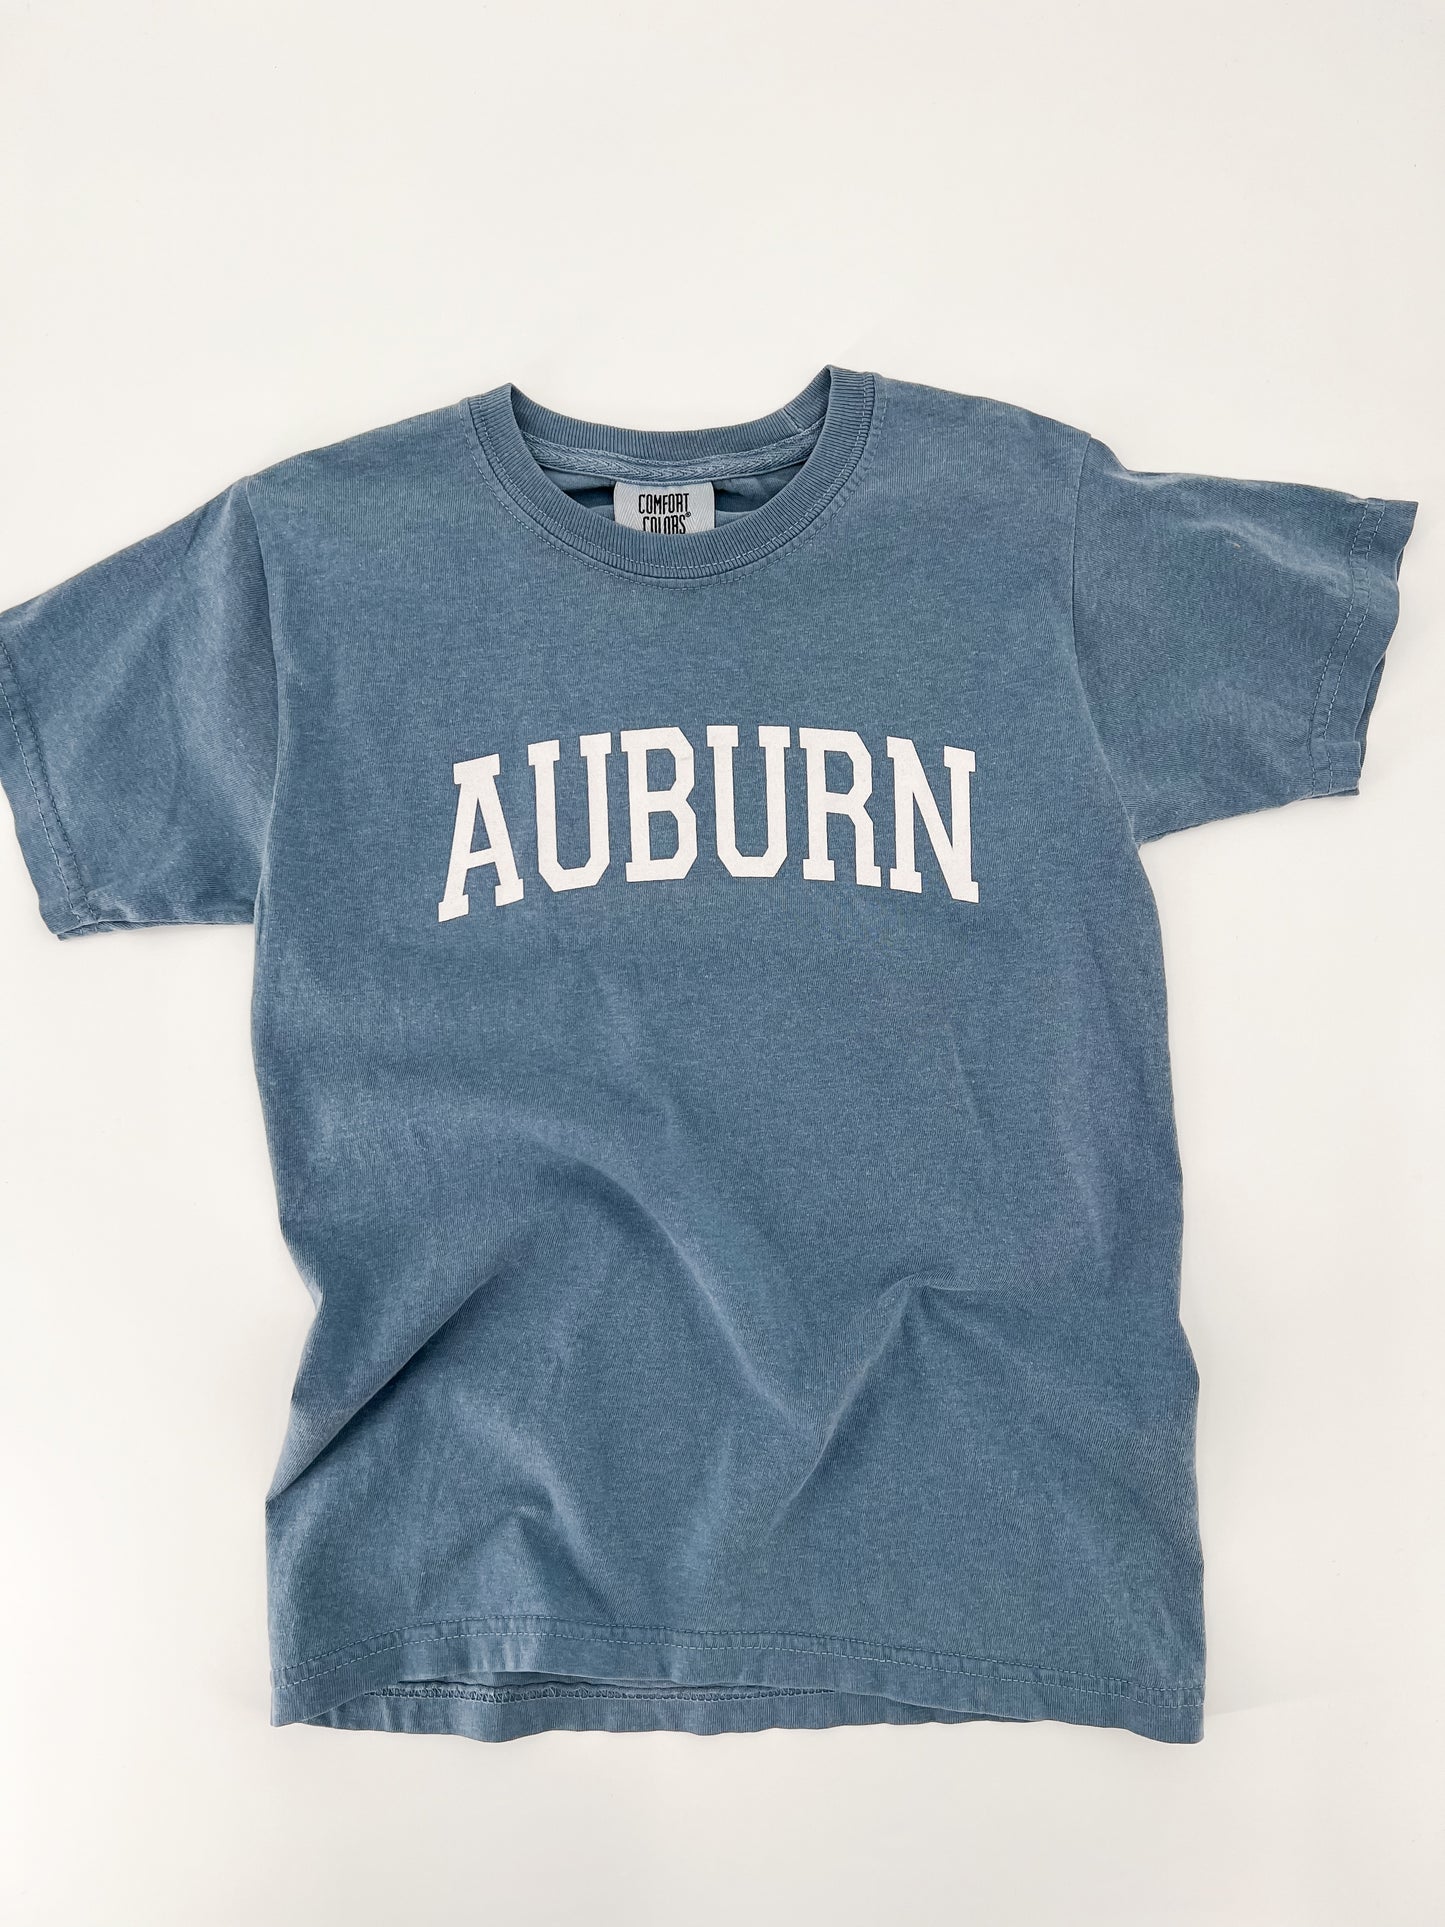 Auburn Varsity Comfort Colors Tee